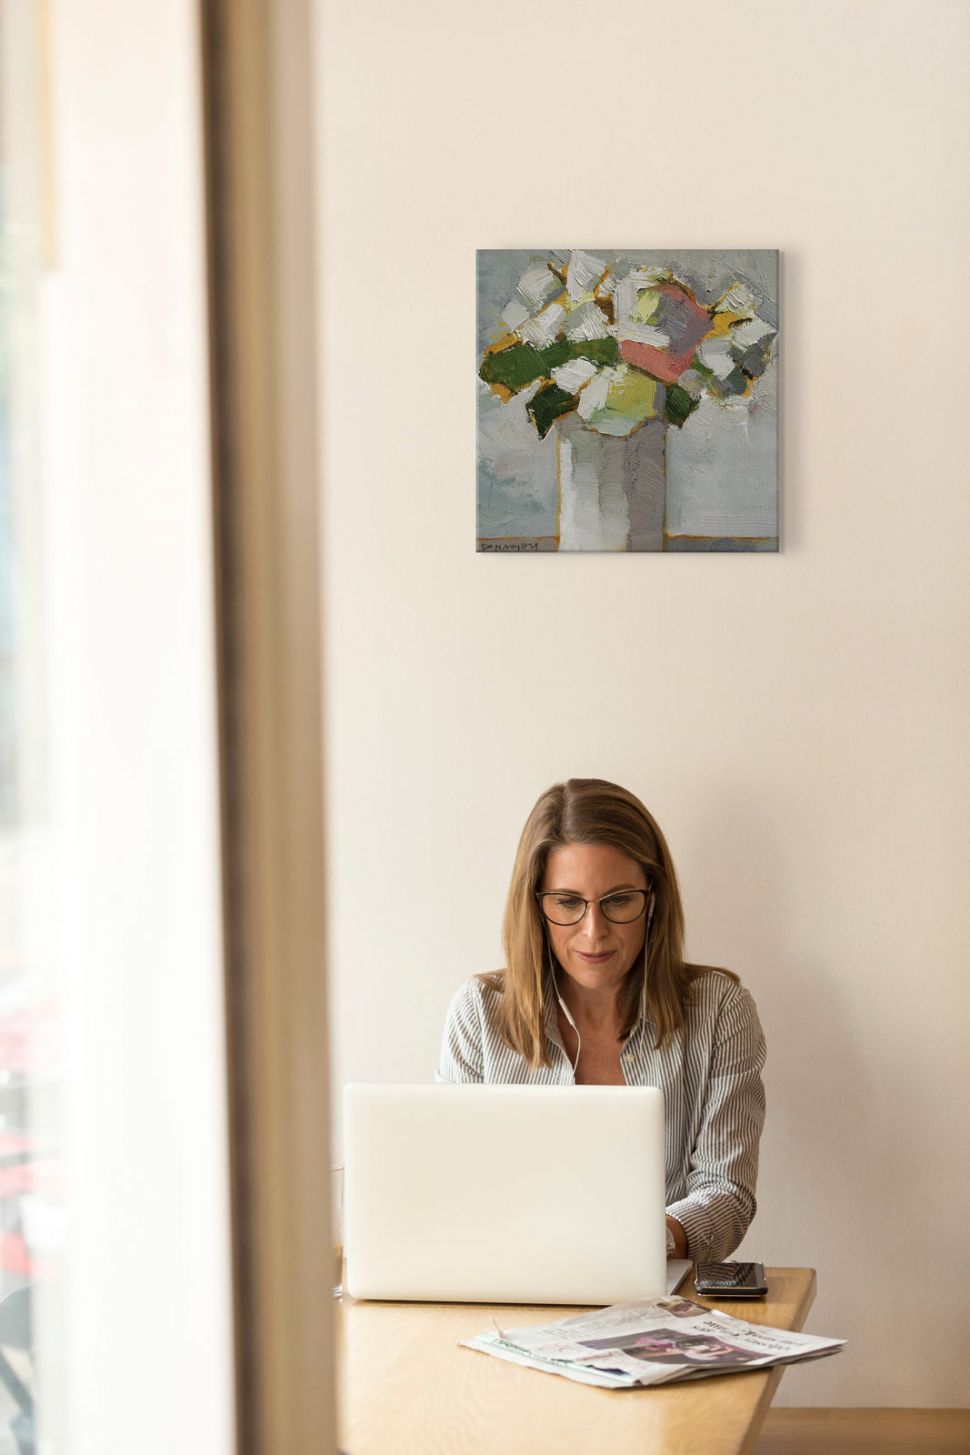 Obraz na płótnie wiszący w biurze na białej ścianie nad pracującą kobietą przedstawiający kwiaty we flakonie